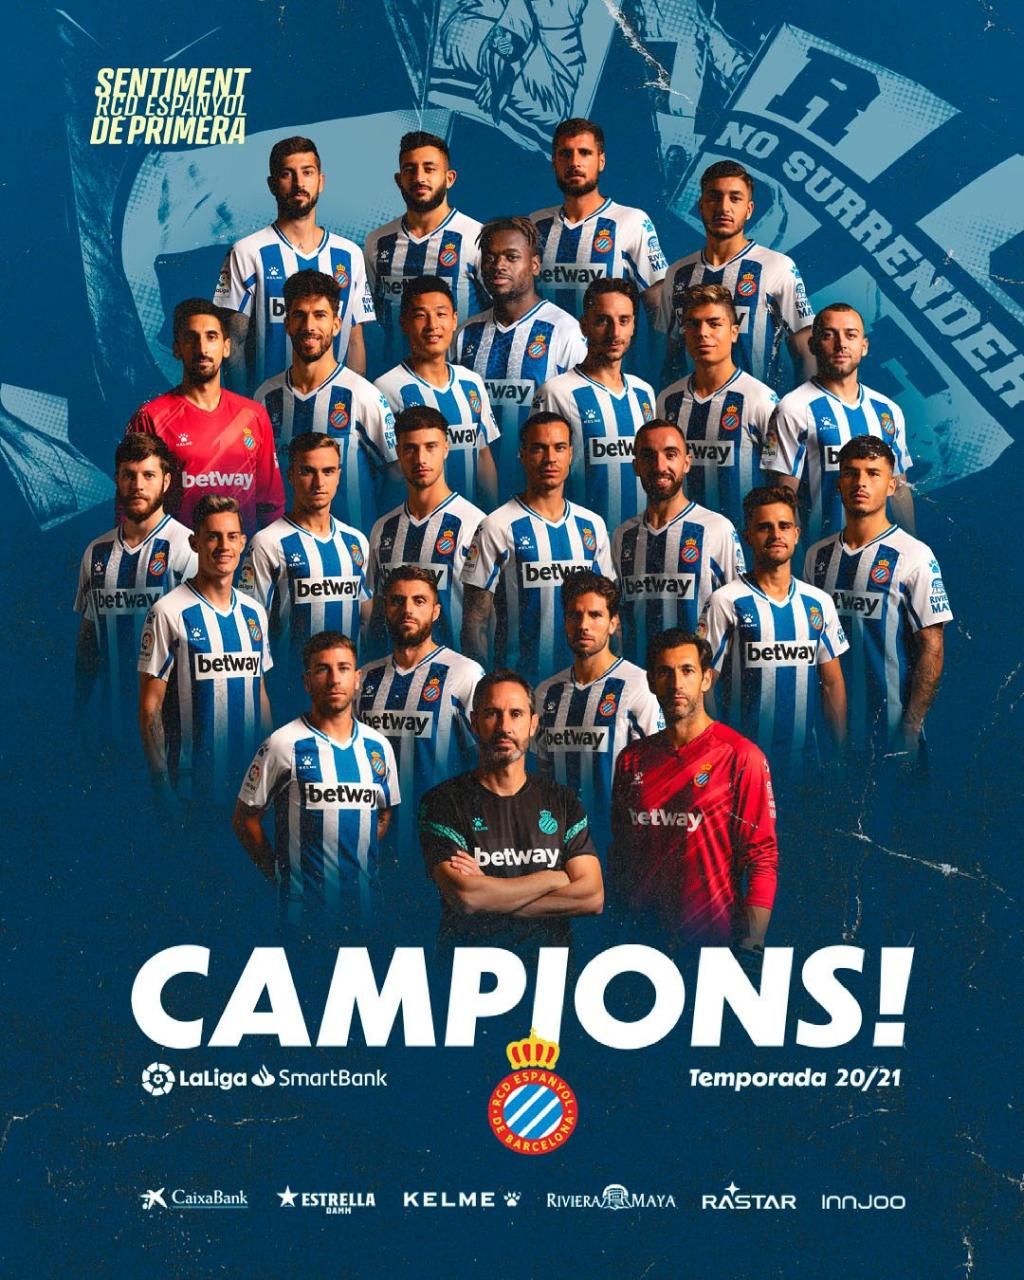 Espanyol, Lugo y salvados... - Estadio Deportivo